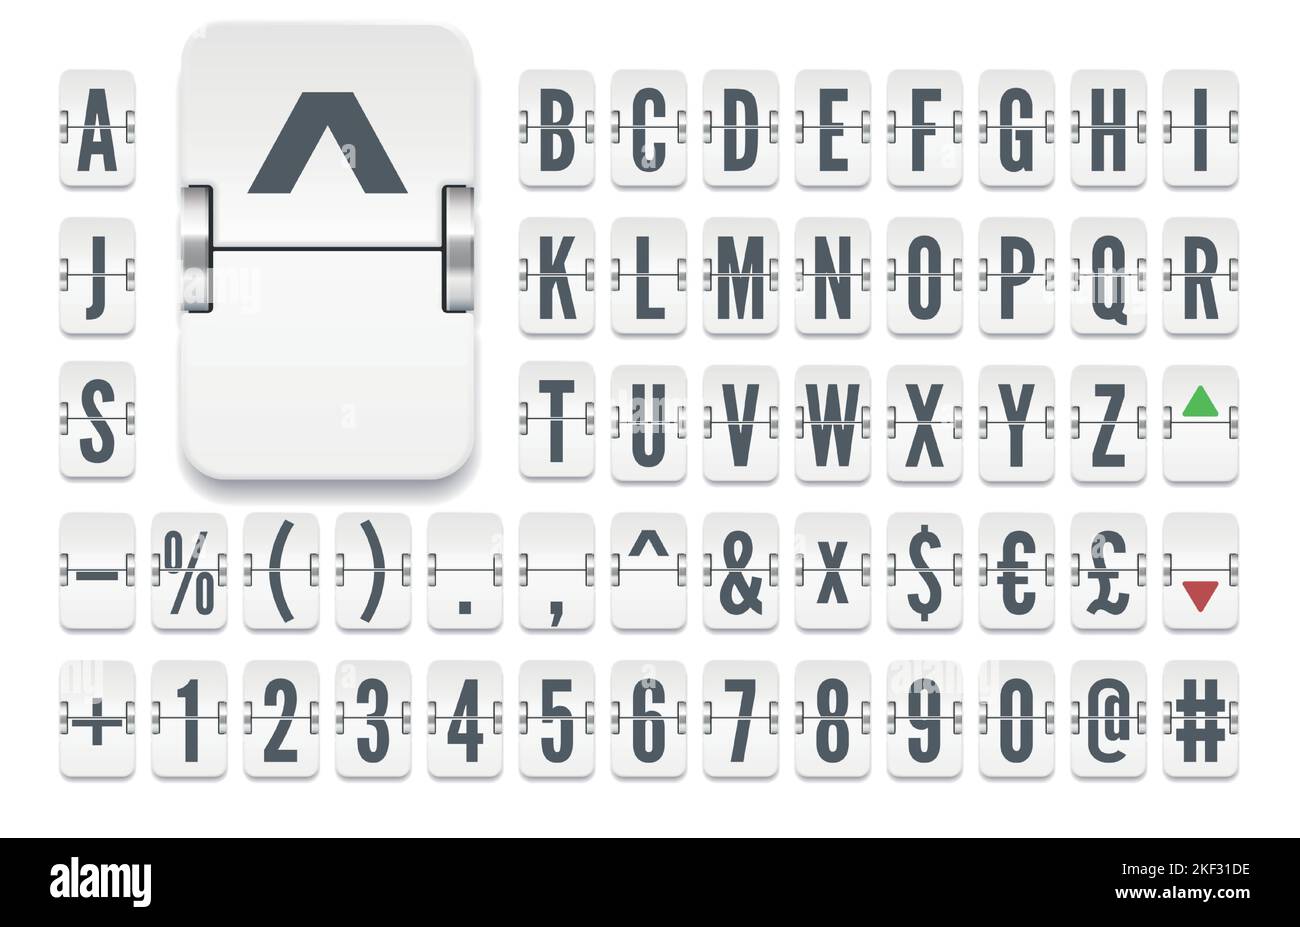 Bianco aeroporto flip board meccanico grassetto alfabeto con i numeri per le informazioni sui tassi di cambio delle azioni che mostra. Illustrazione vettoriale. Illustrazione Vettoriale